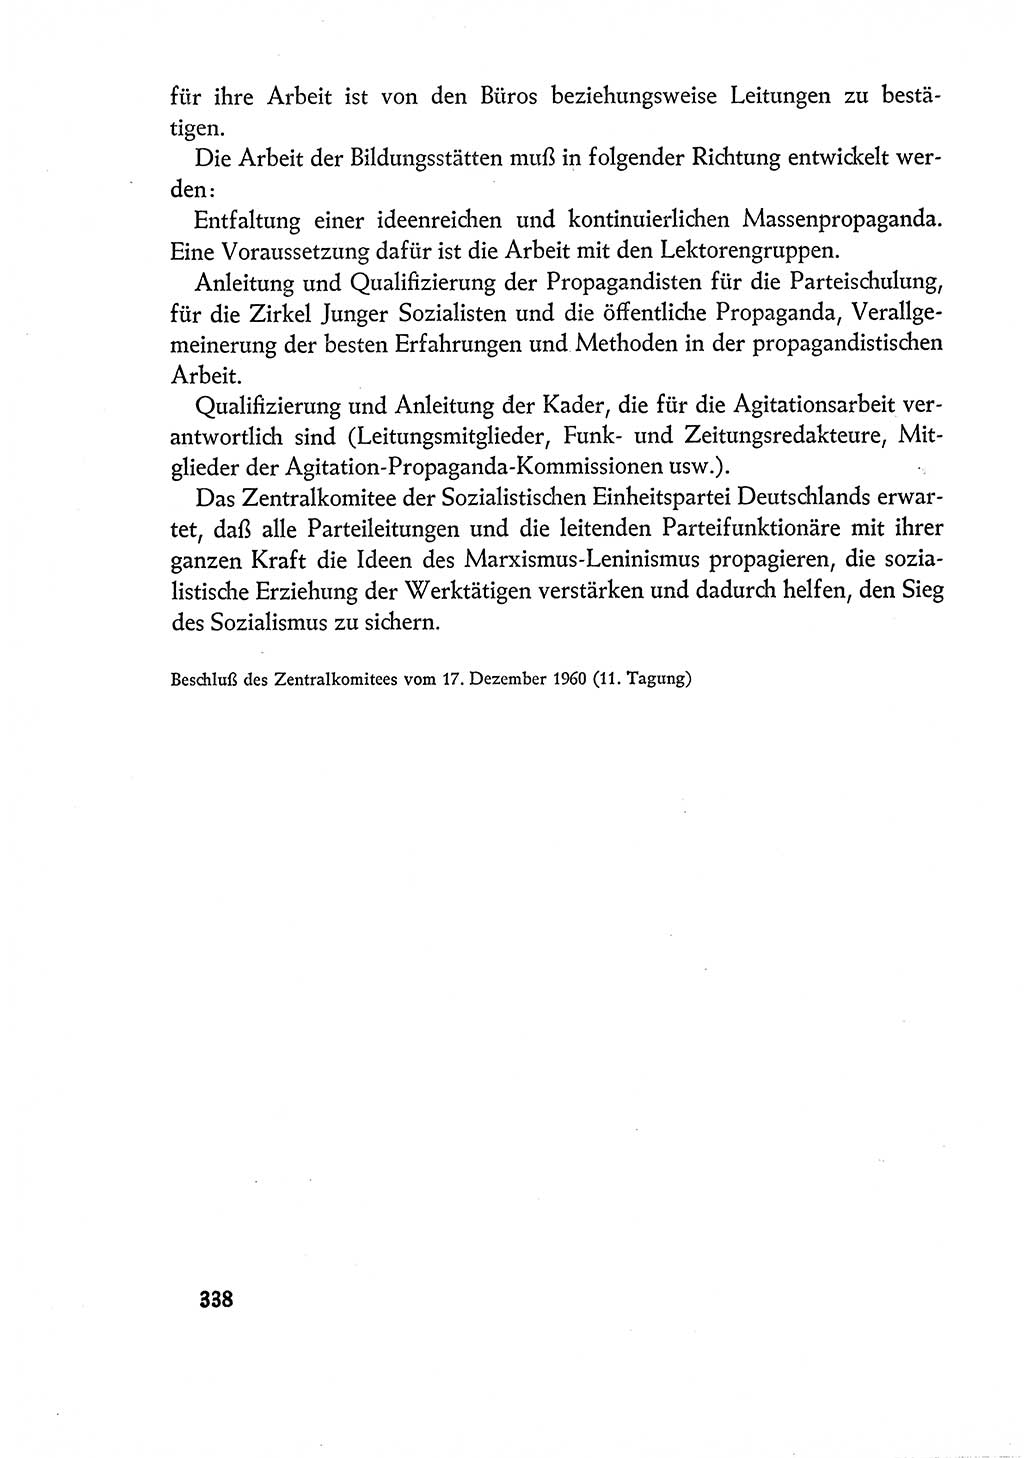 Dokumente der Sozialistischen Einheitspartei Deutschlands (SED) [Deutsche Demokratische Republik (DDR)] 1960-1961, Seite 338 (Dok. SED DDR 1960-1961, S. 338)